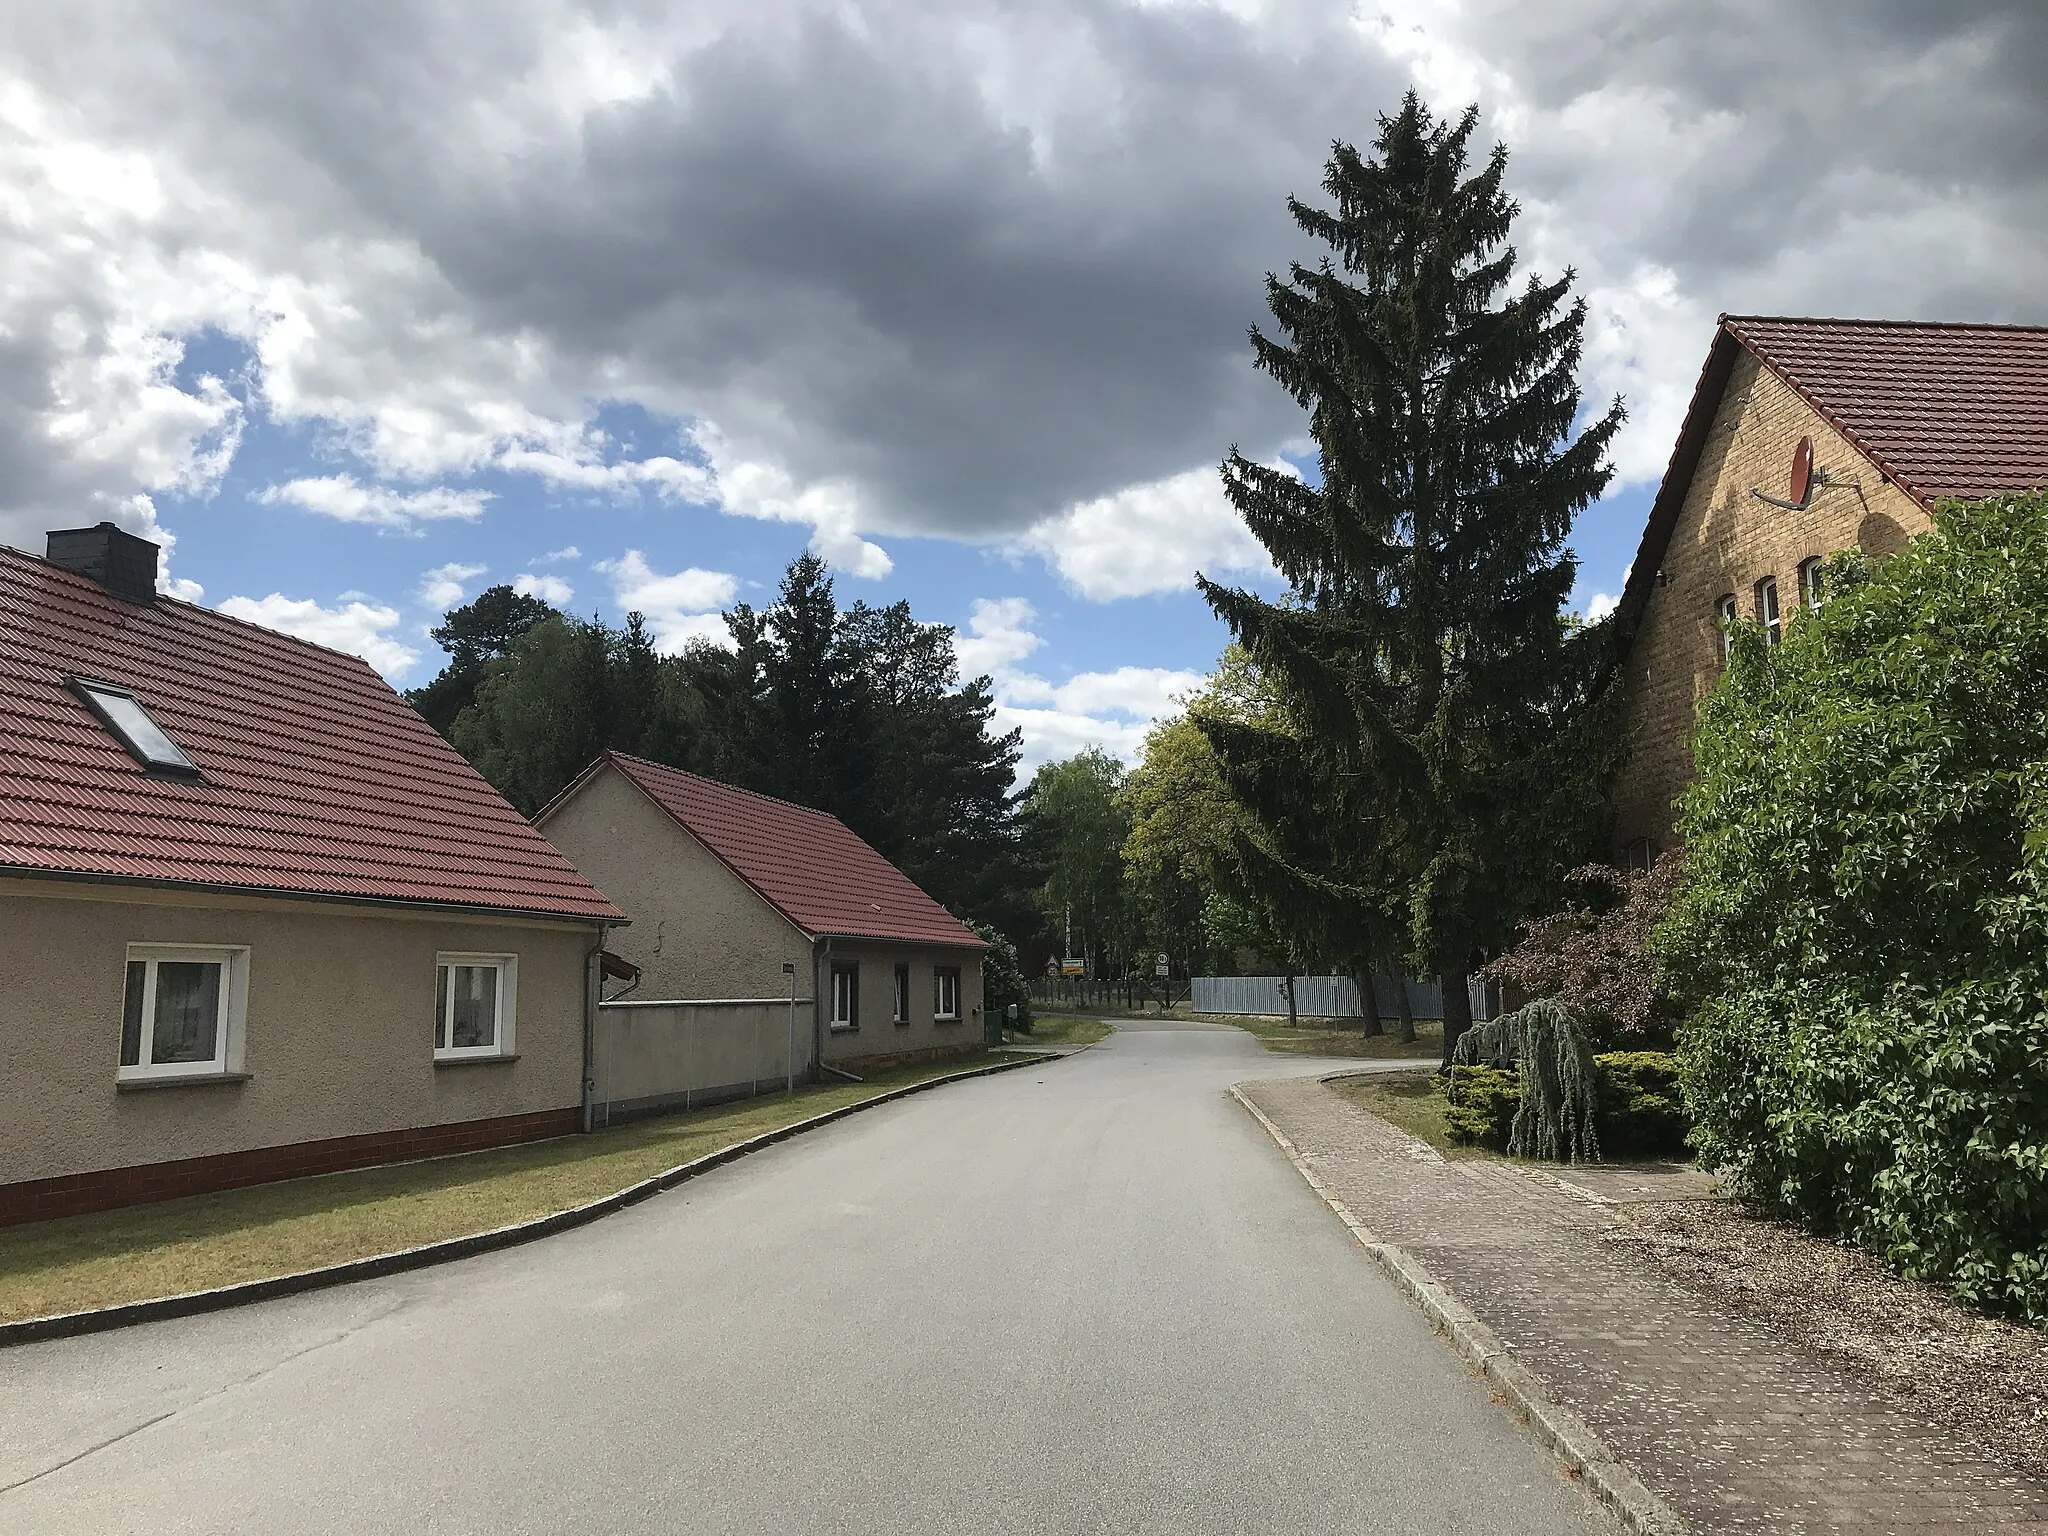 Photo showing: Staakow, ein Ortsteil von Rietzneuendorf-Staakow in Brandenburg